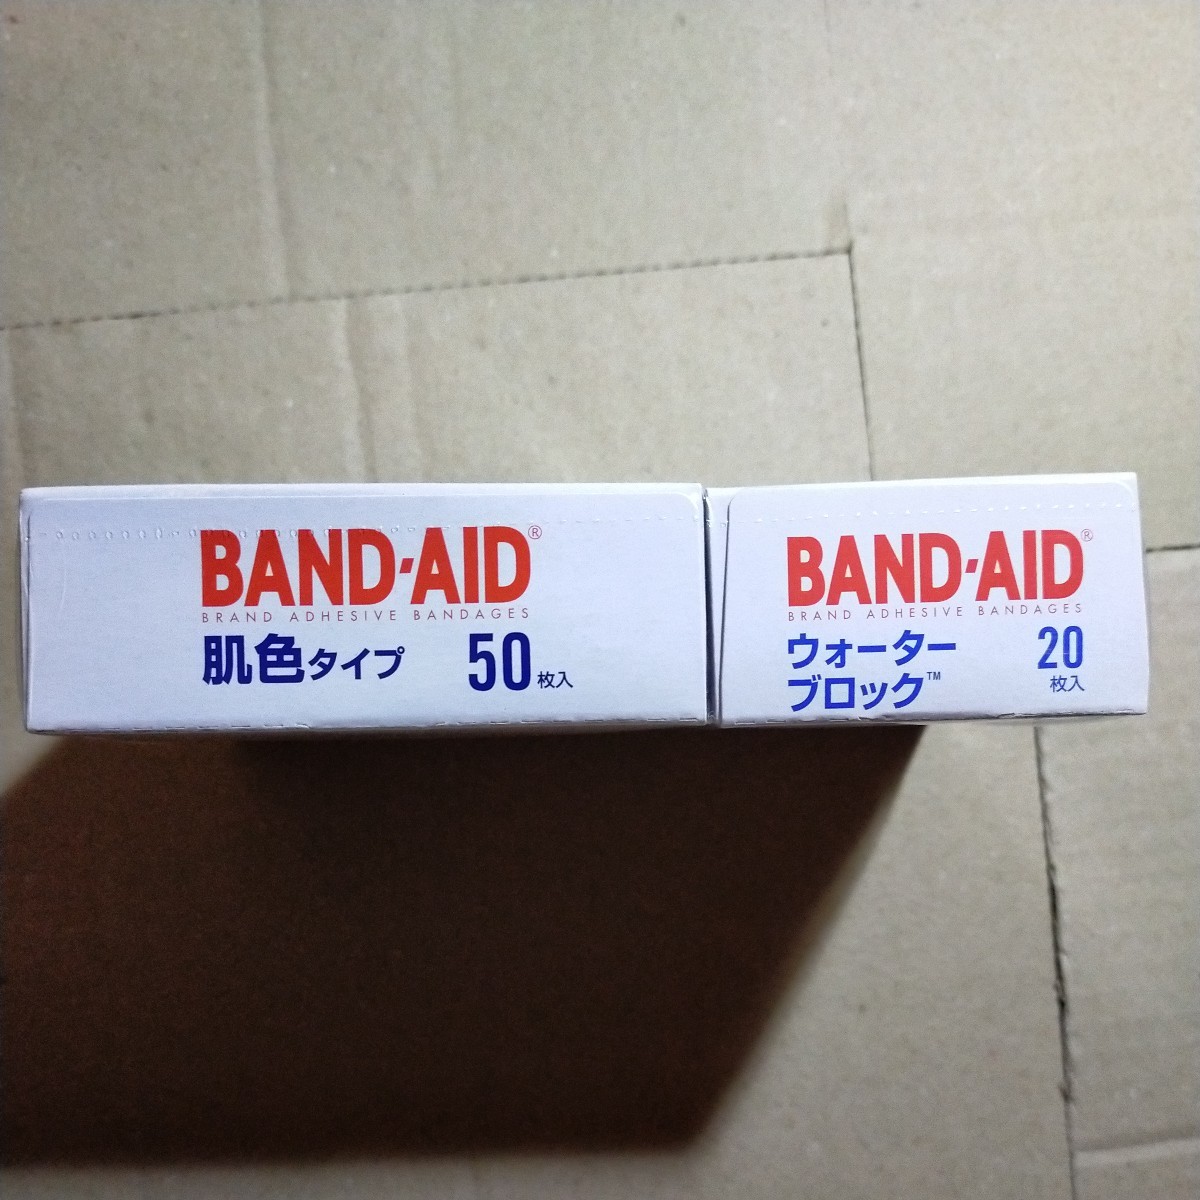 BAND-AID частота помощь . цвет модель 50 листов & вода блок 20 листов пара упаковка лейкопластырь cut van y9856-1-HA4